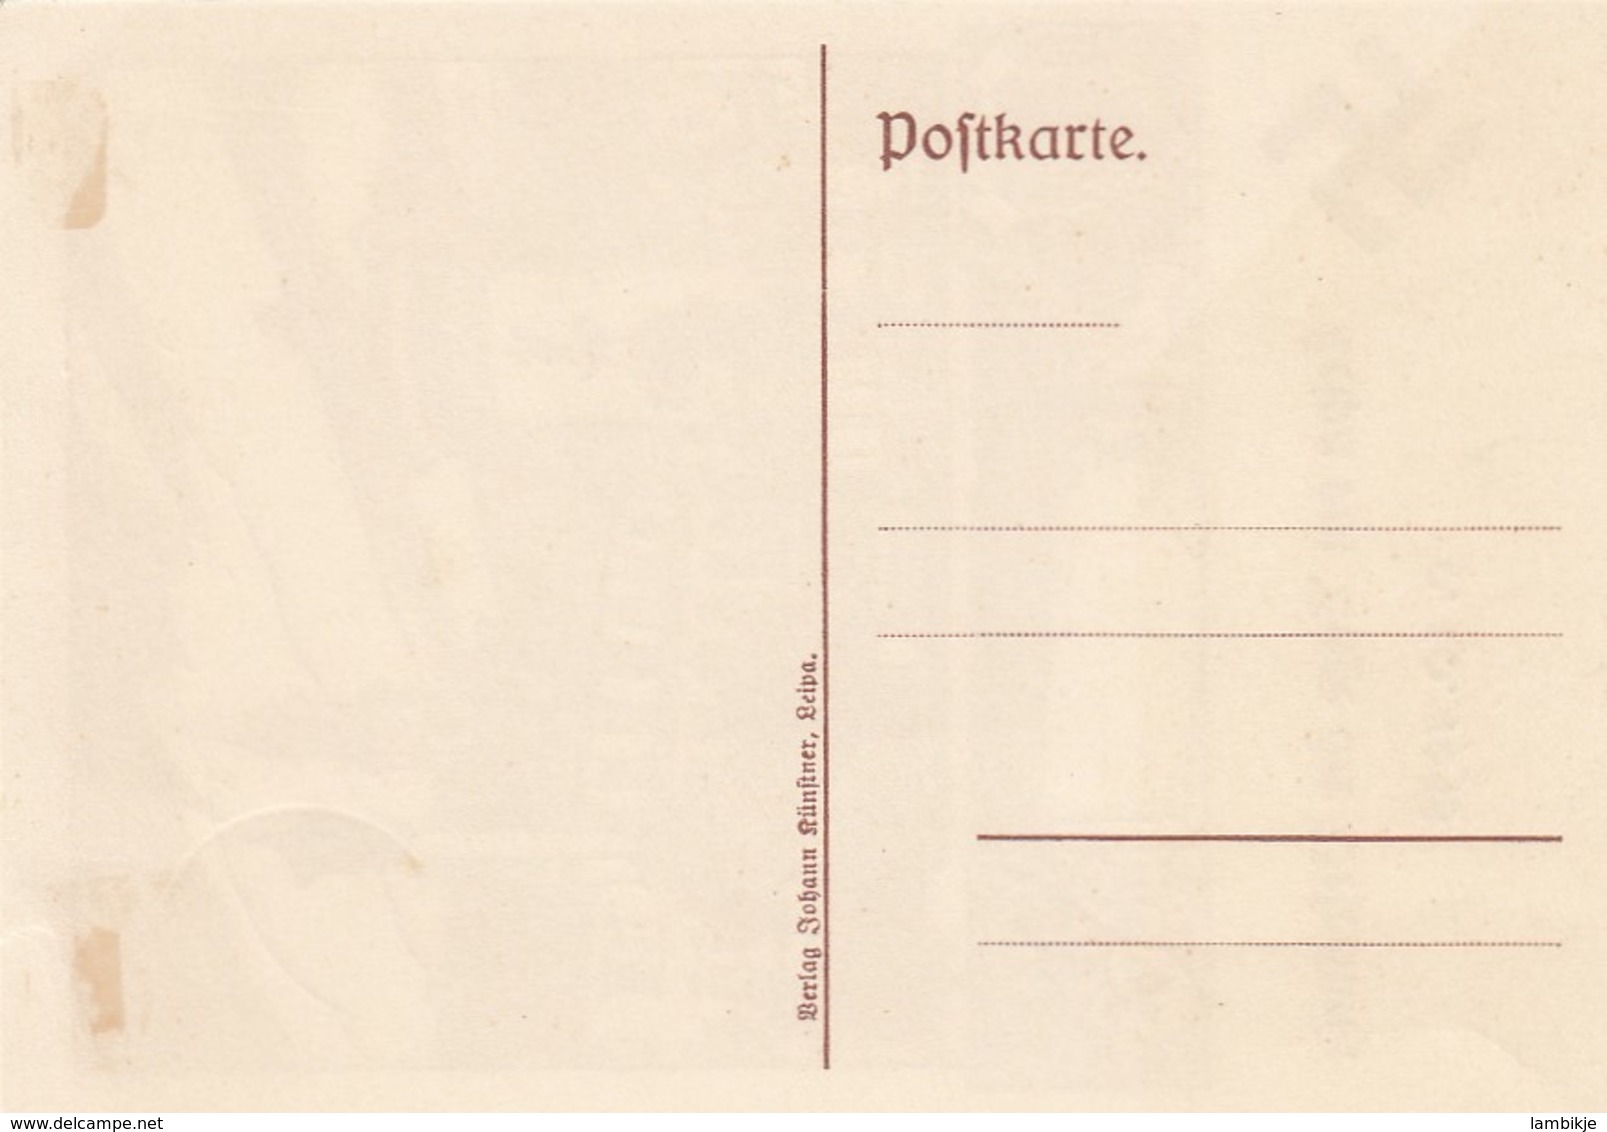 Deutsches Reich Propaganda Postkarte 1938 Leipa Usw - Gebraucht